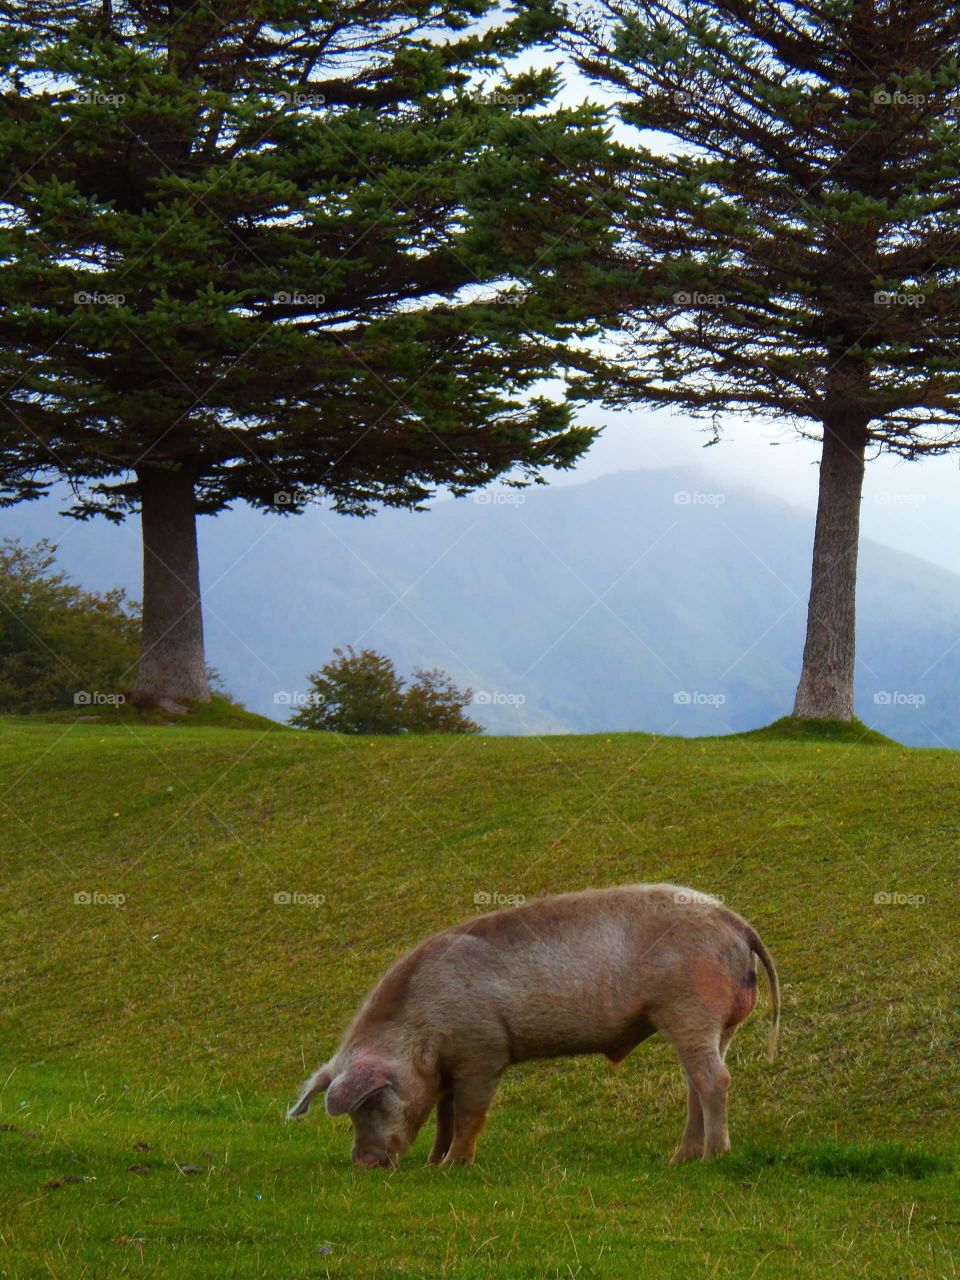 Pig-Patagonia Argentina